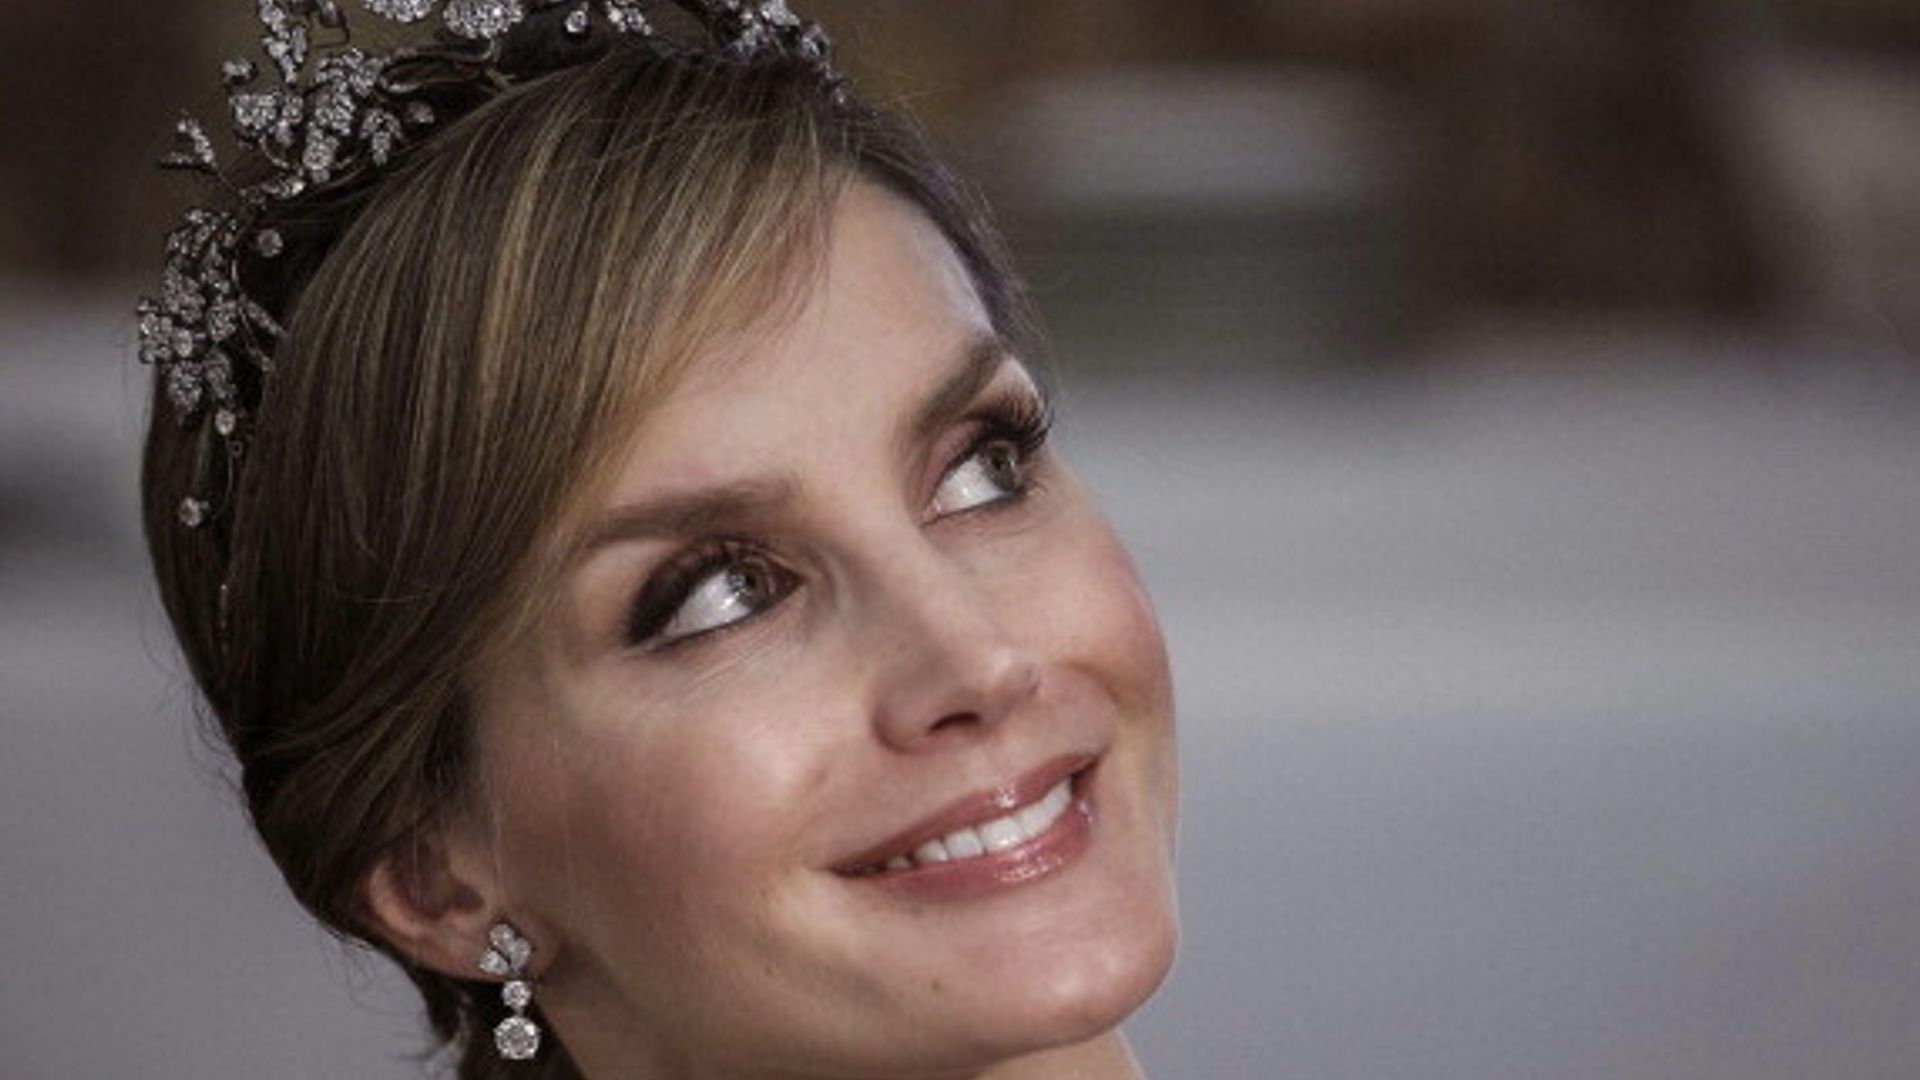 Queen Letizia's favorite tiara belongs to her mother-in-law Queen Sofia